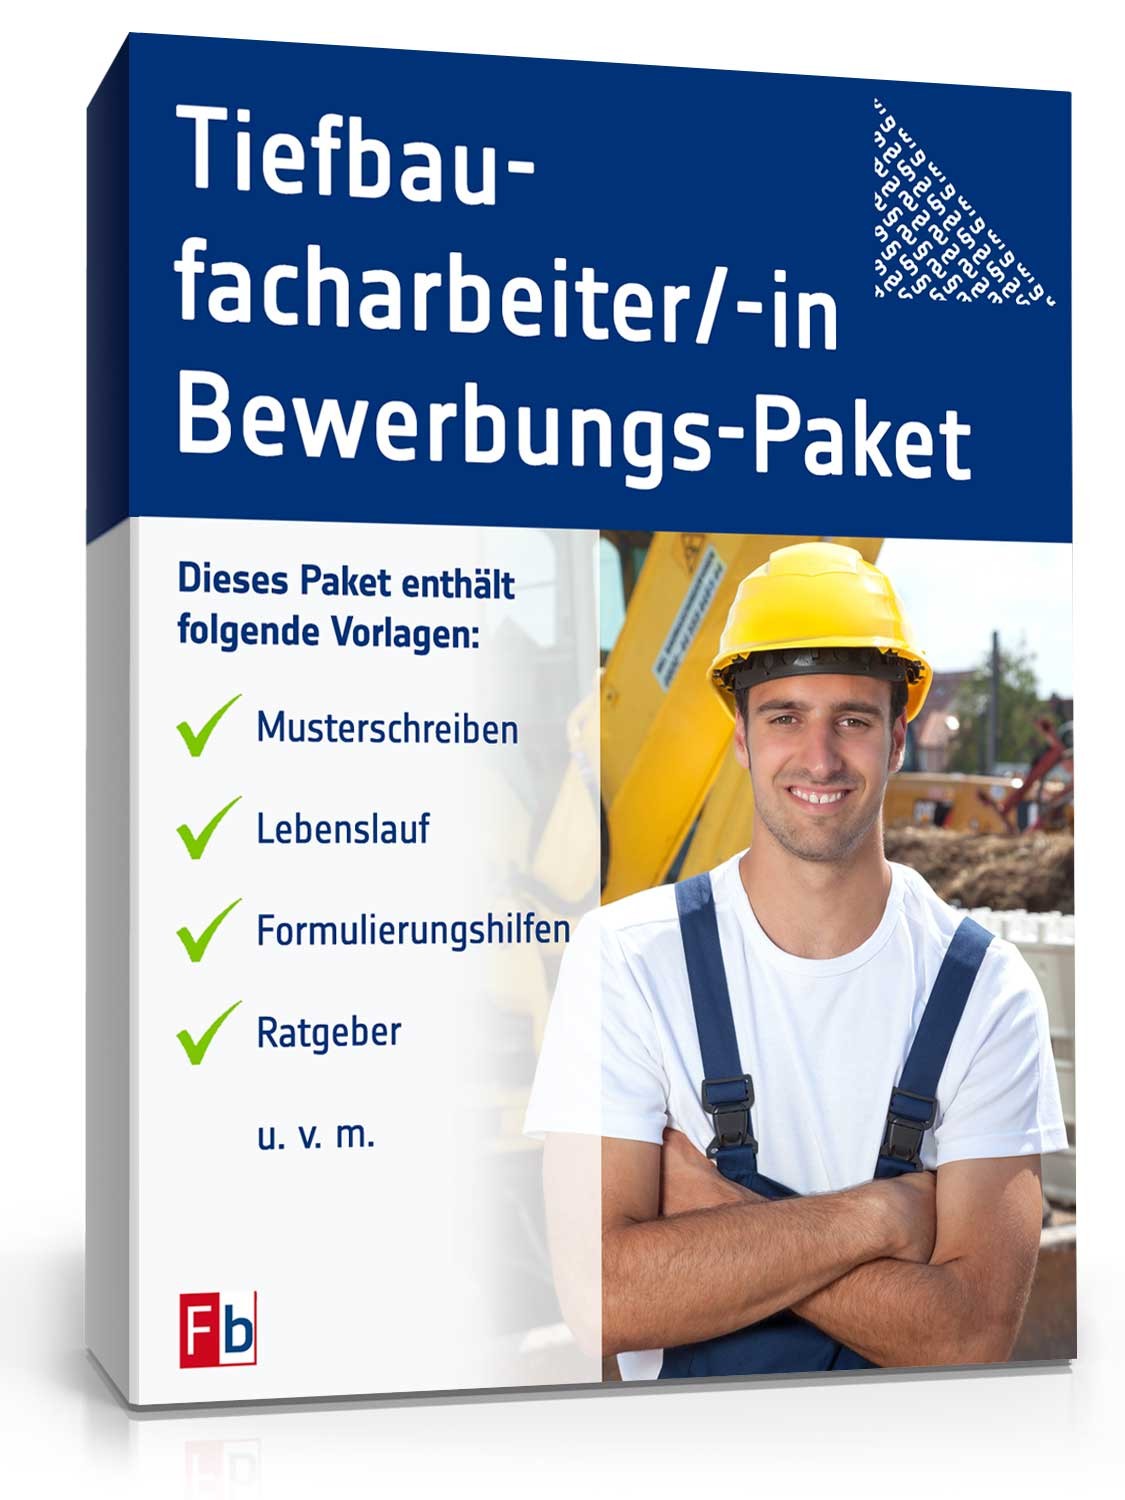 Hauptbild des Produkts: Bewerbungs-Paket Tiefbaufacharbeiter 